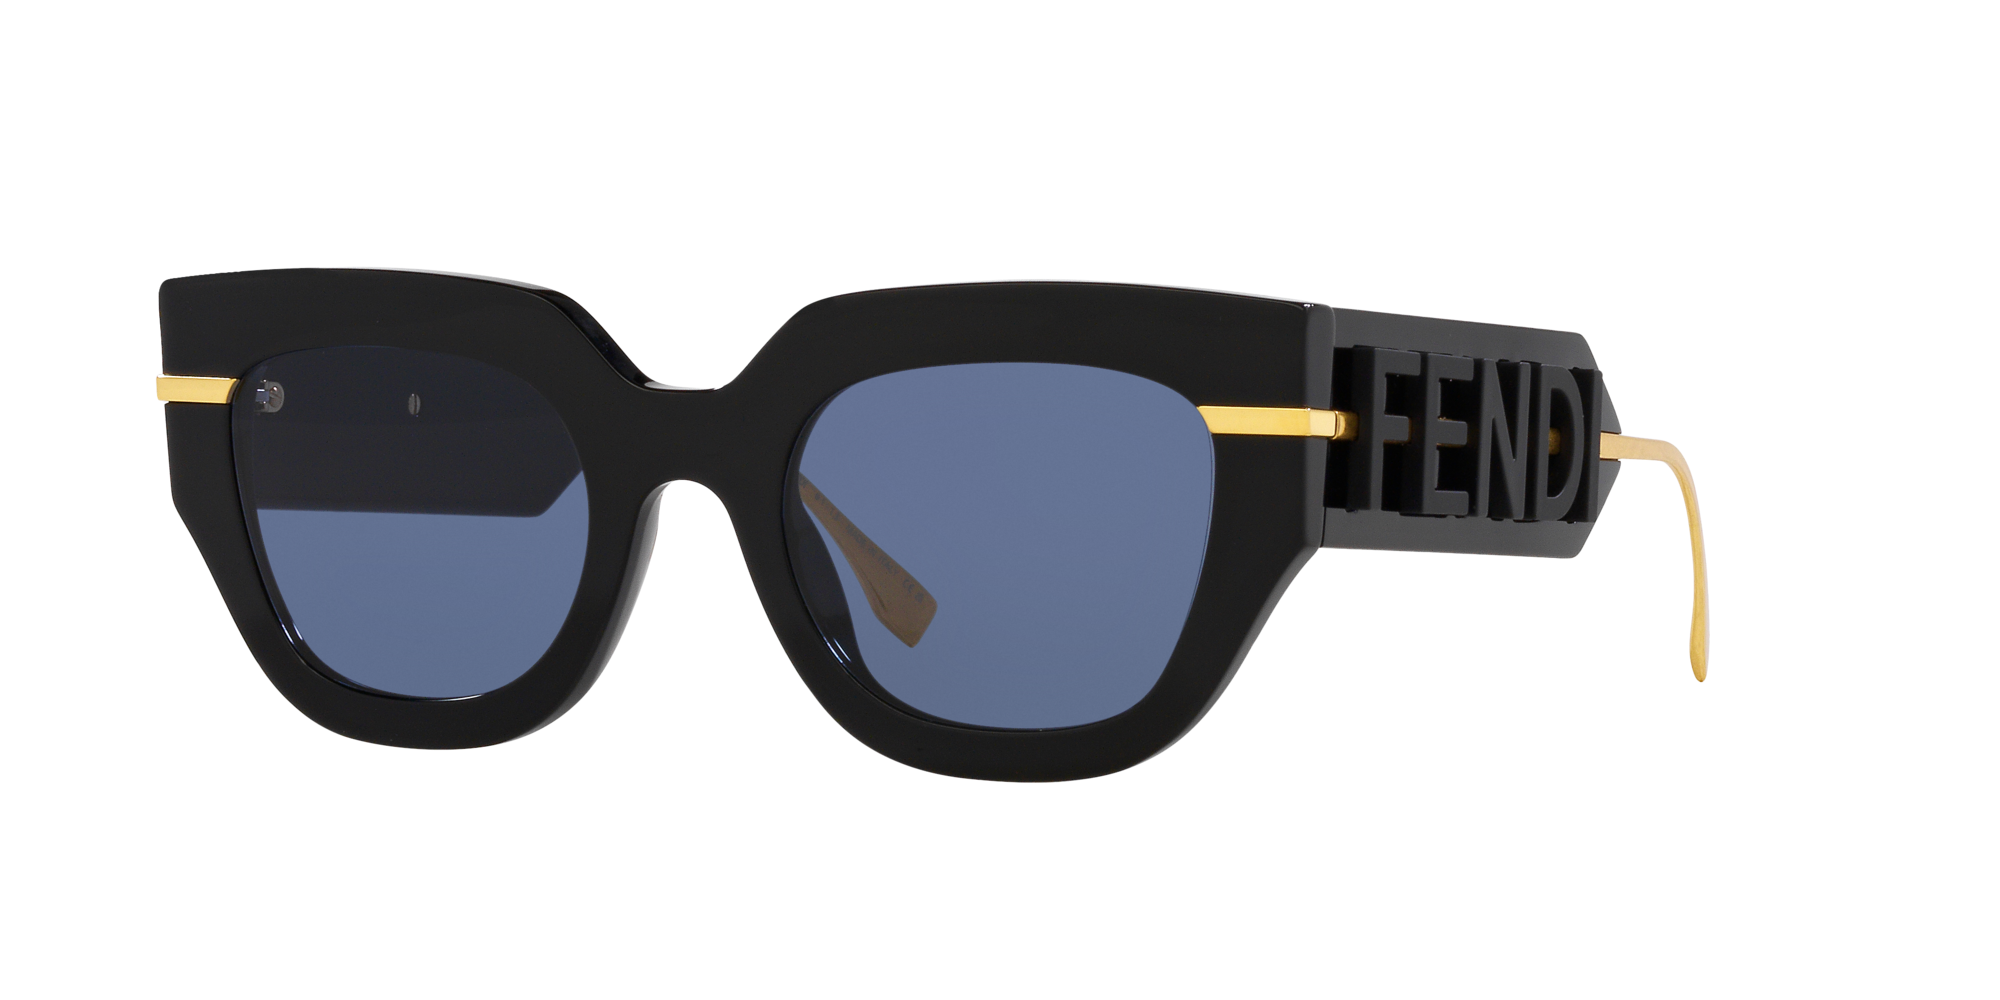 Fendi Round Sunglasses - FS459 508 120 | Round sunglasses, Fendi, Fendi  accessories